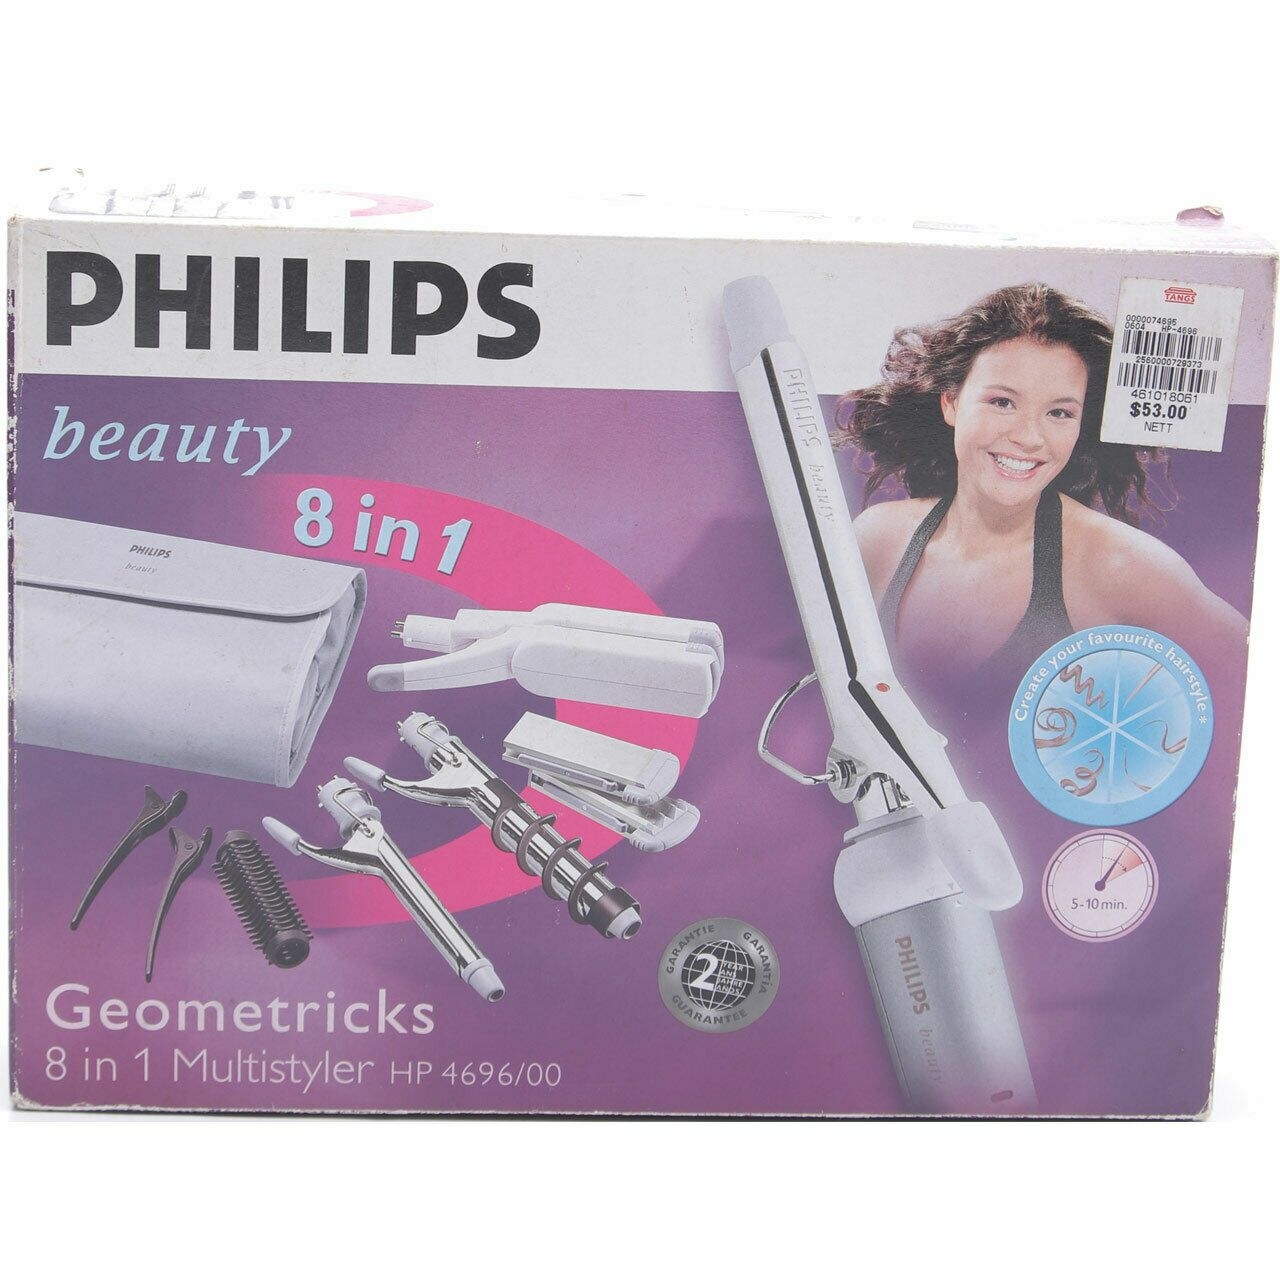 Philips Grey Geometricks 8 In 1 Multistyler HP4696/00 Tools